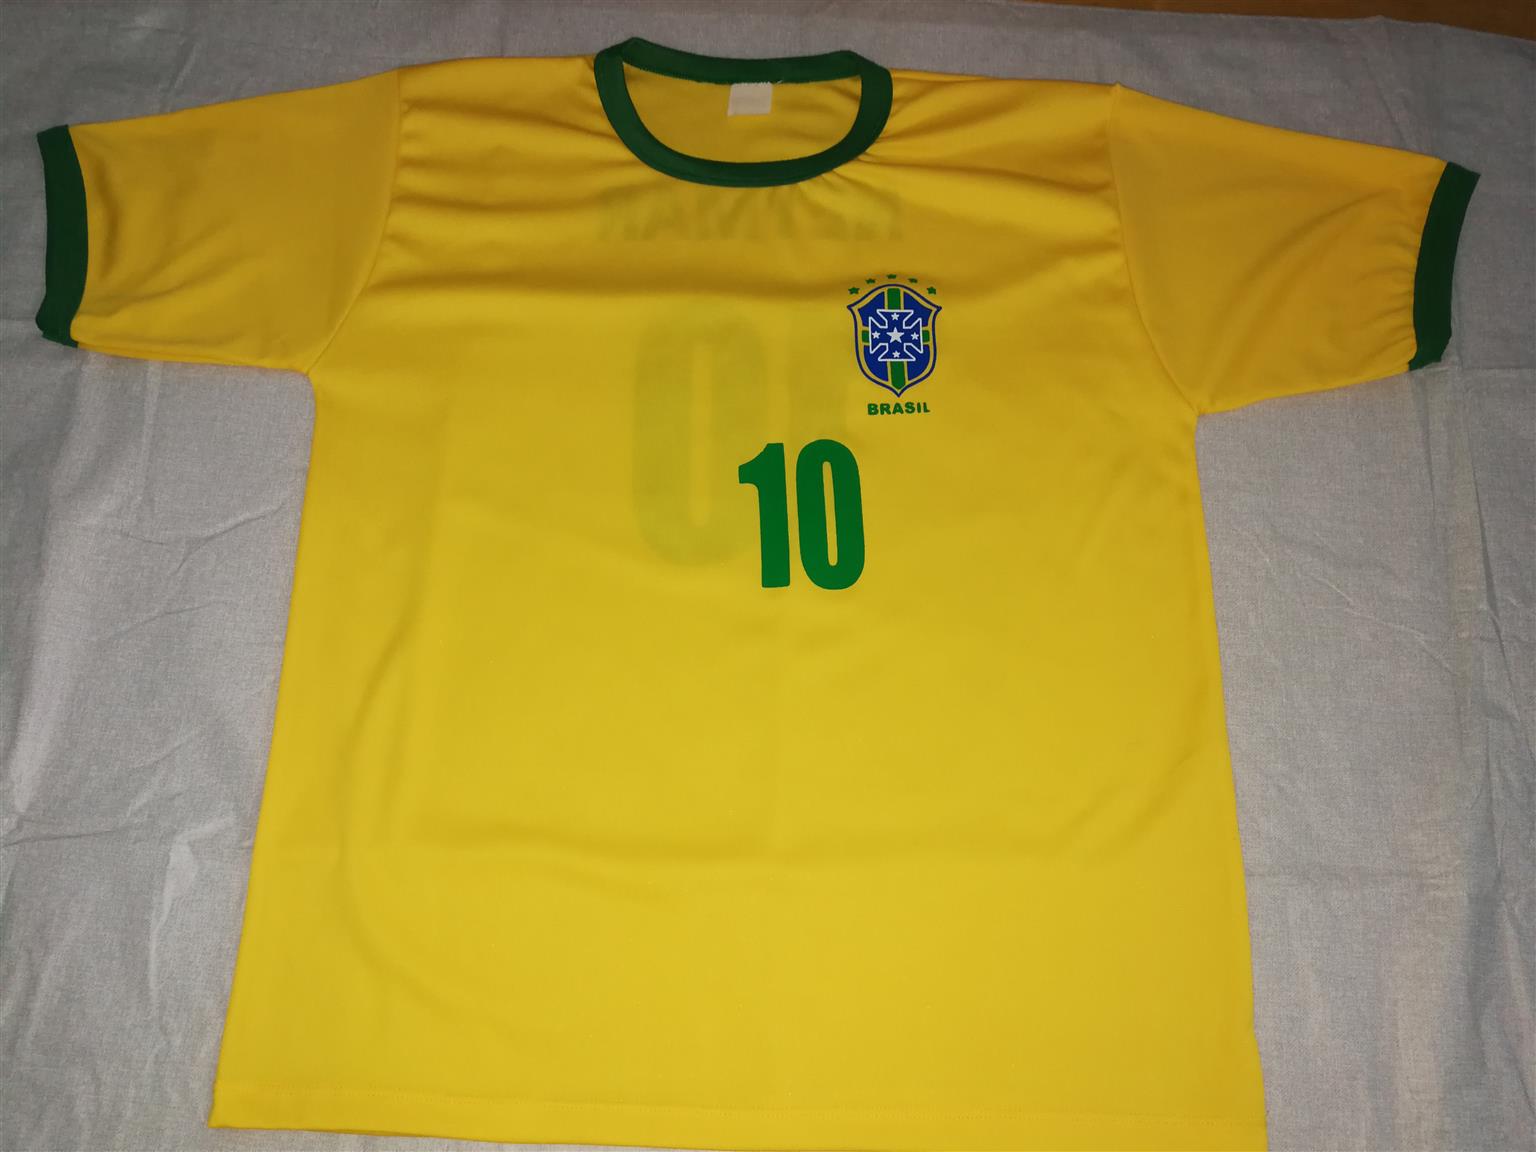 Neymar Brazil Football Shirt with Cap